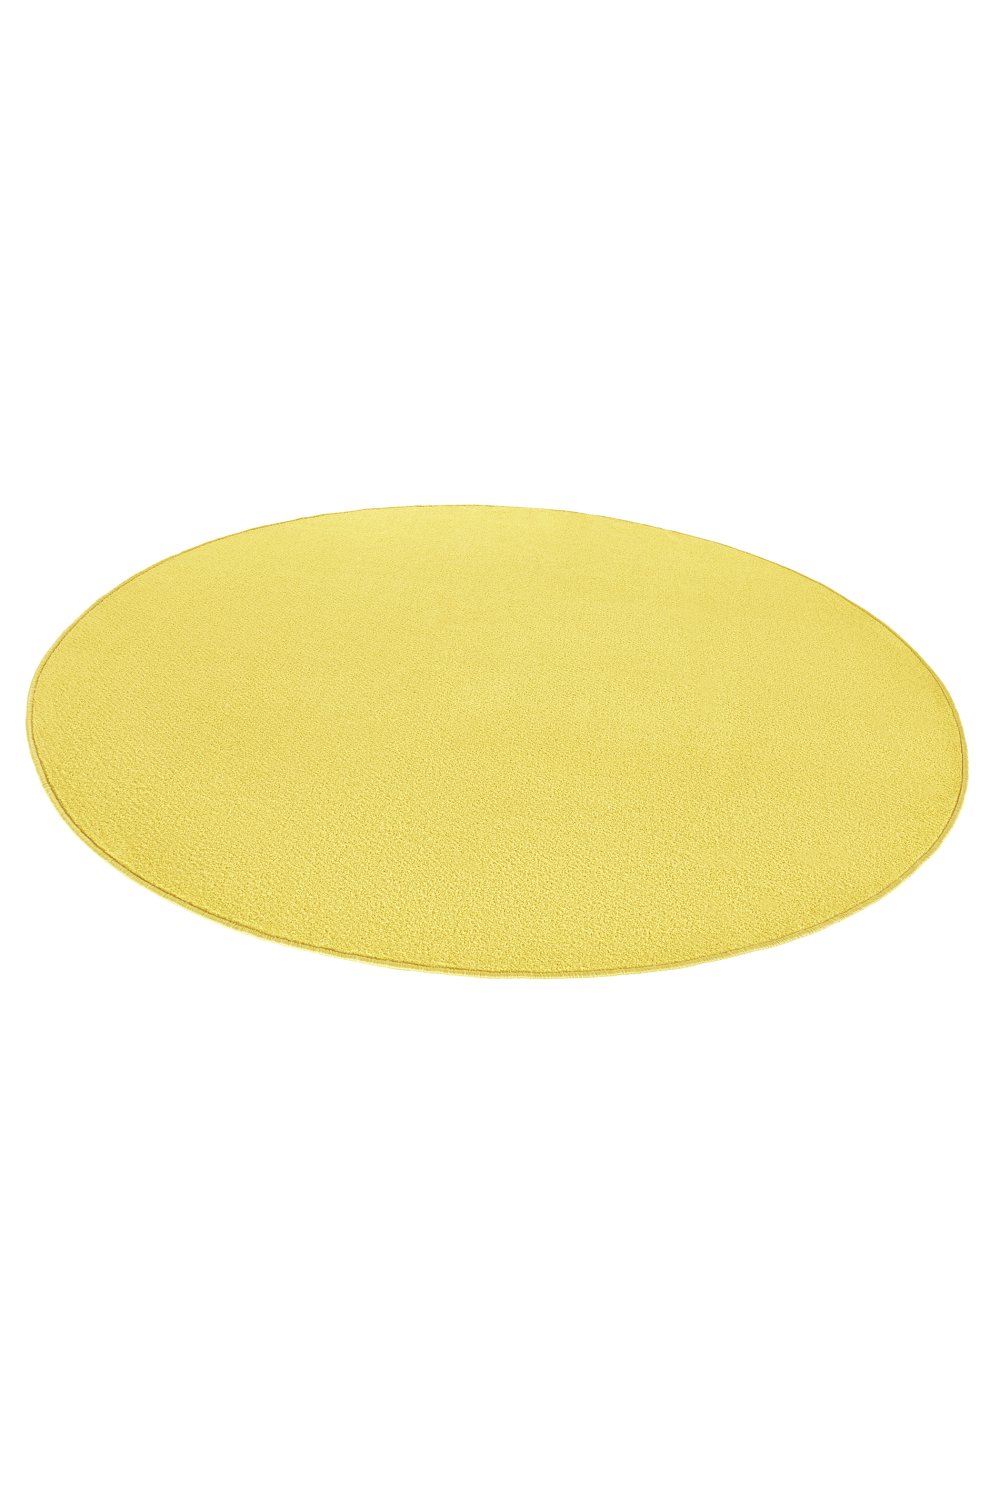 Dywan Jednokolorowy Fancy Okrągły 103002 Yellow